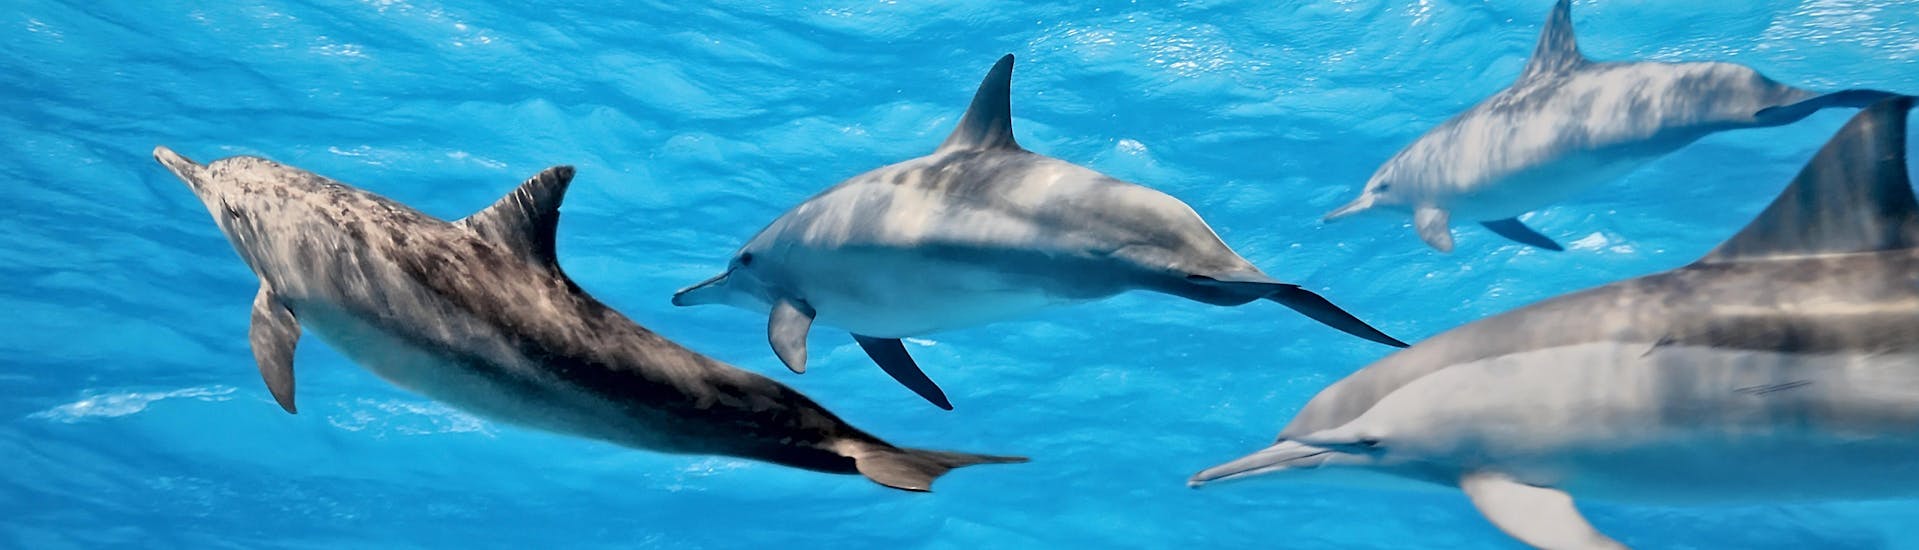 Observa a los delfines nadando durante tu paseo en barco y miralos saltar